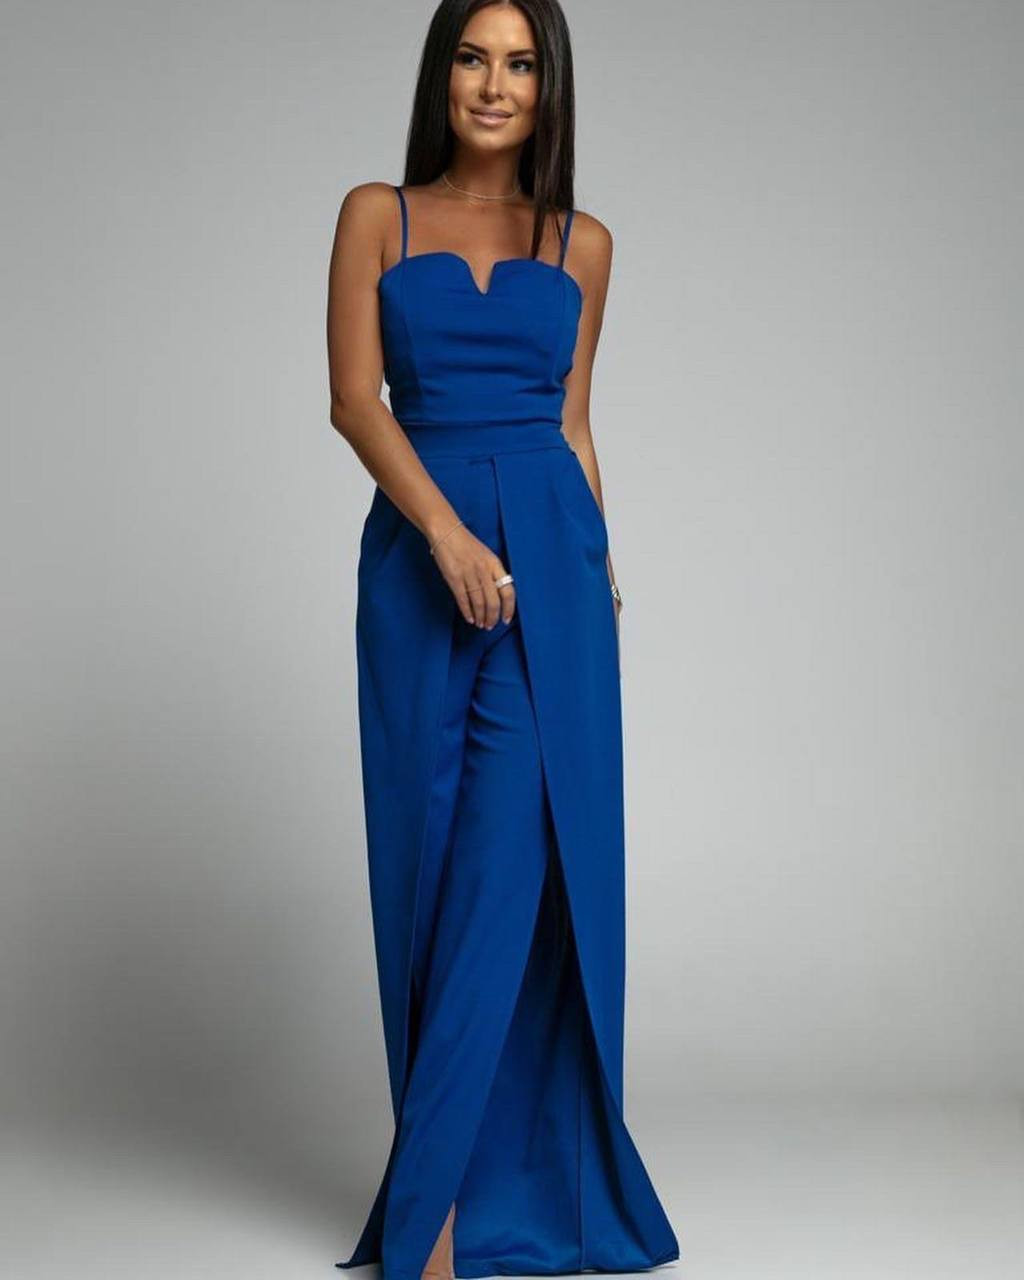 Γυναικεία ολόσωμη φόρμα με σκίσιμο 4845 μπλε